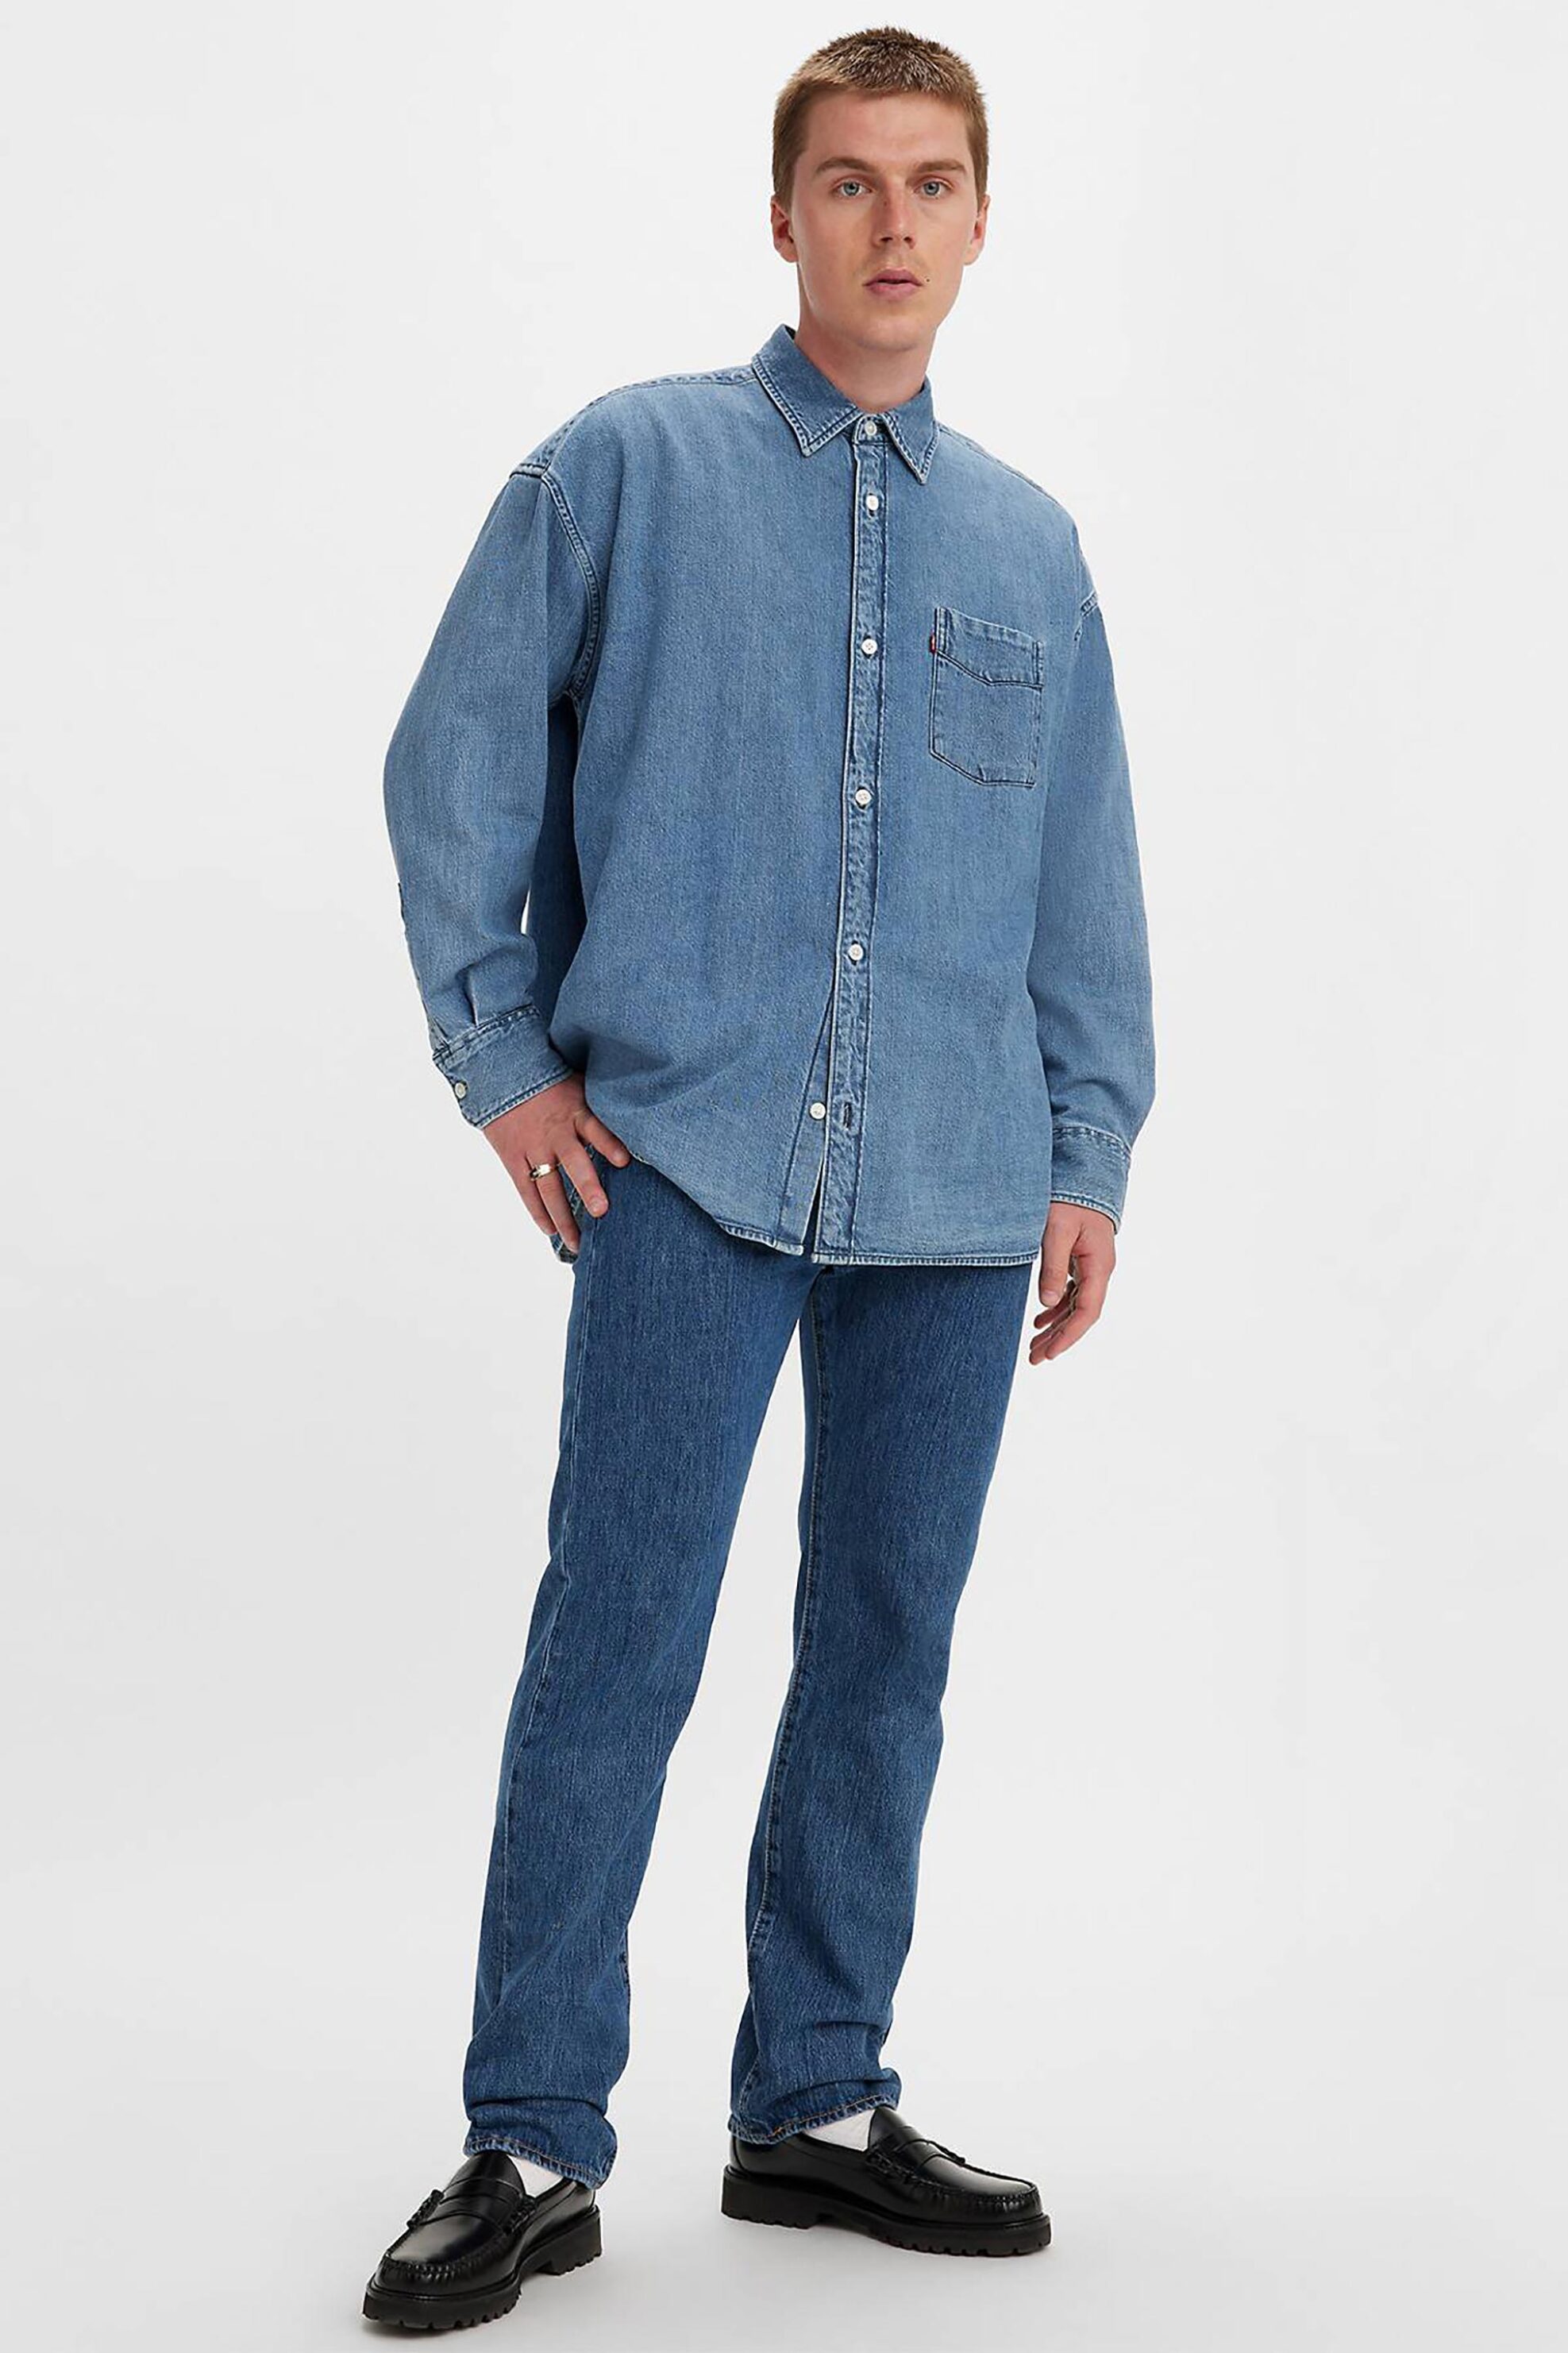 Άνδρας > ΡΟΥΧΑ > Jeans > Straight Levi's® ανδρικό τζην παντελόνι πεντάτσεπο Stonewash Straight Fit "501® Original" - 005010114 Denim Blue